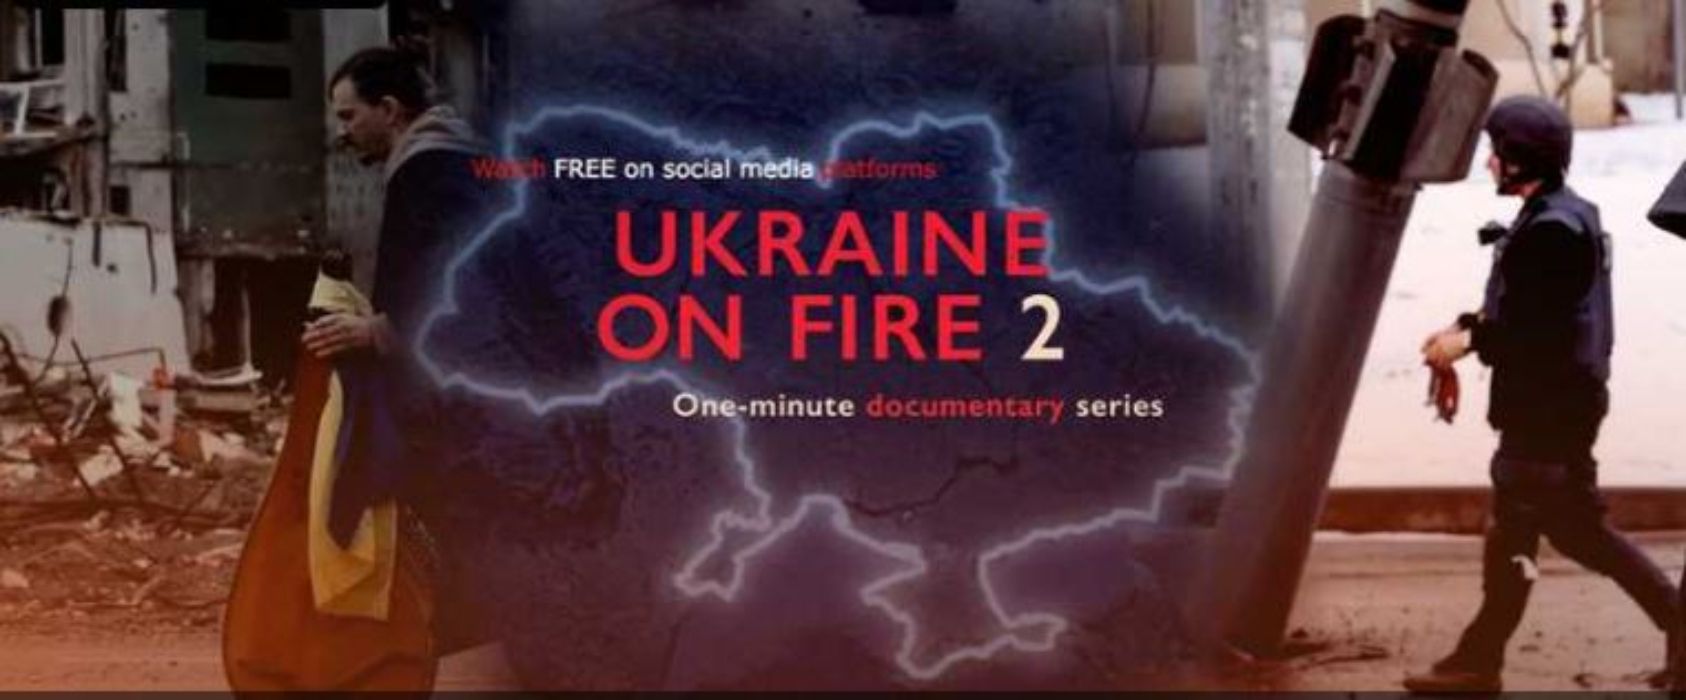 День українського кіно 2022 – Україна в огні 2 – де дивитися серіал онлайн 